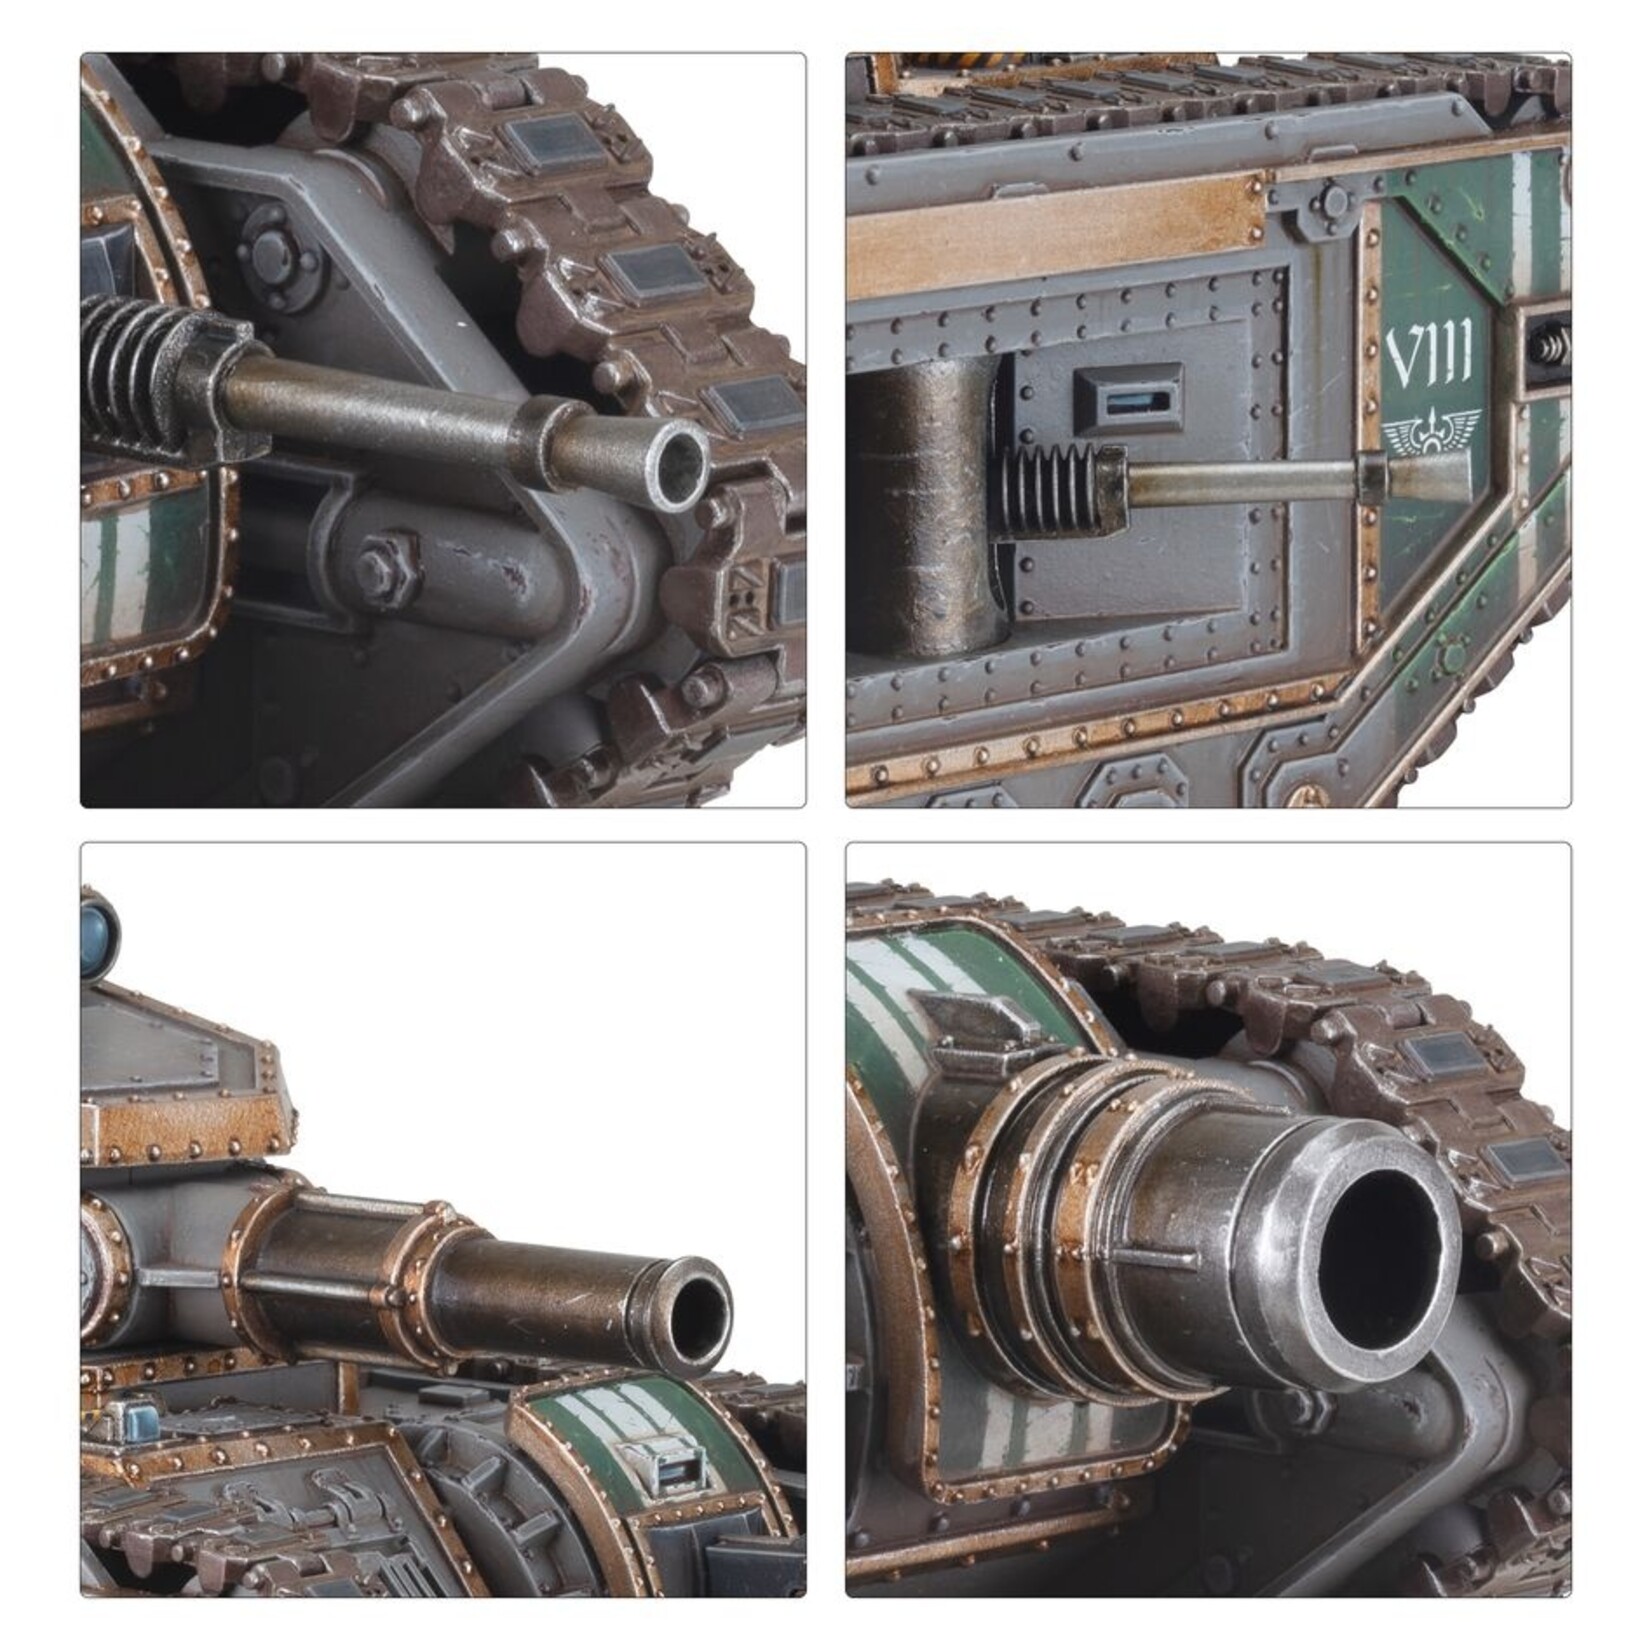 Warhammer: Horus Heresy Solar Auxilia - Malcador Heavy Tank